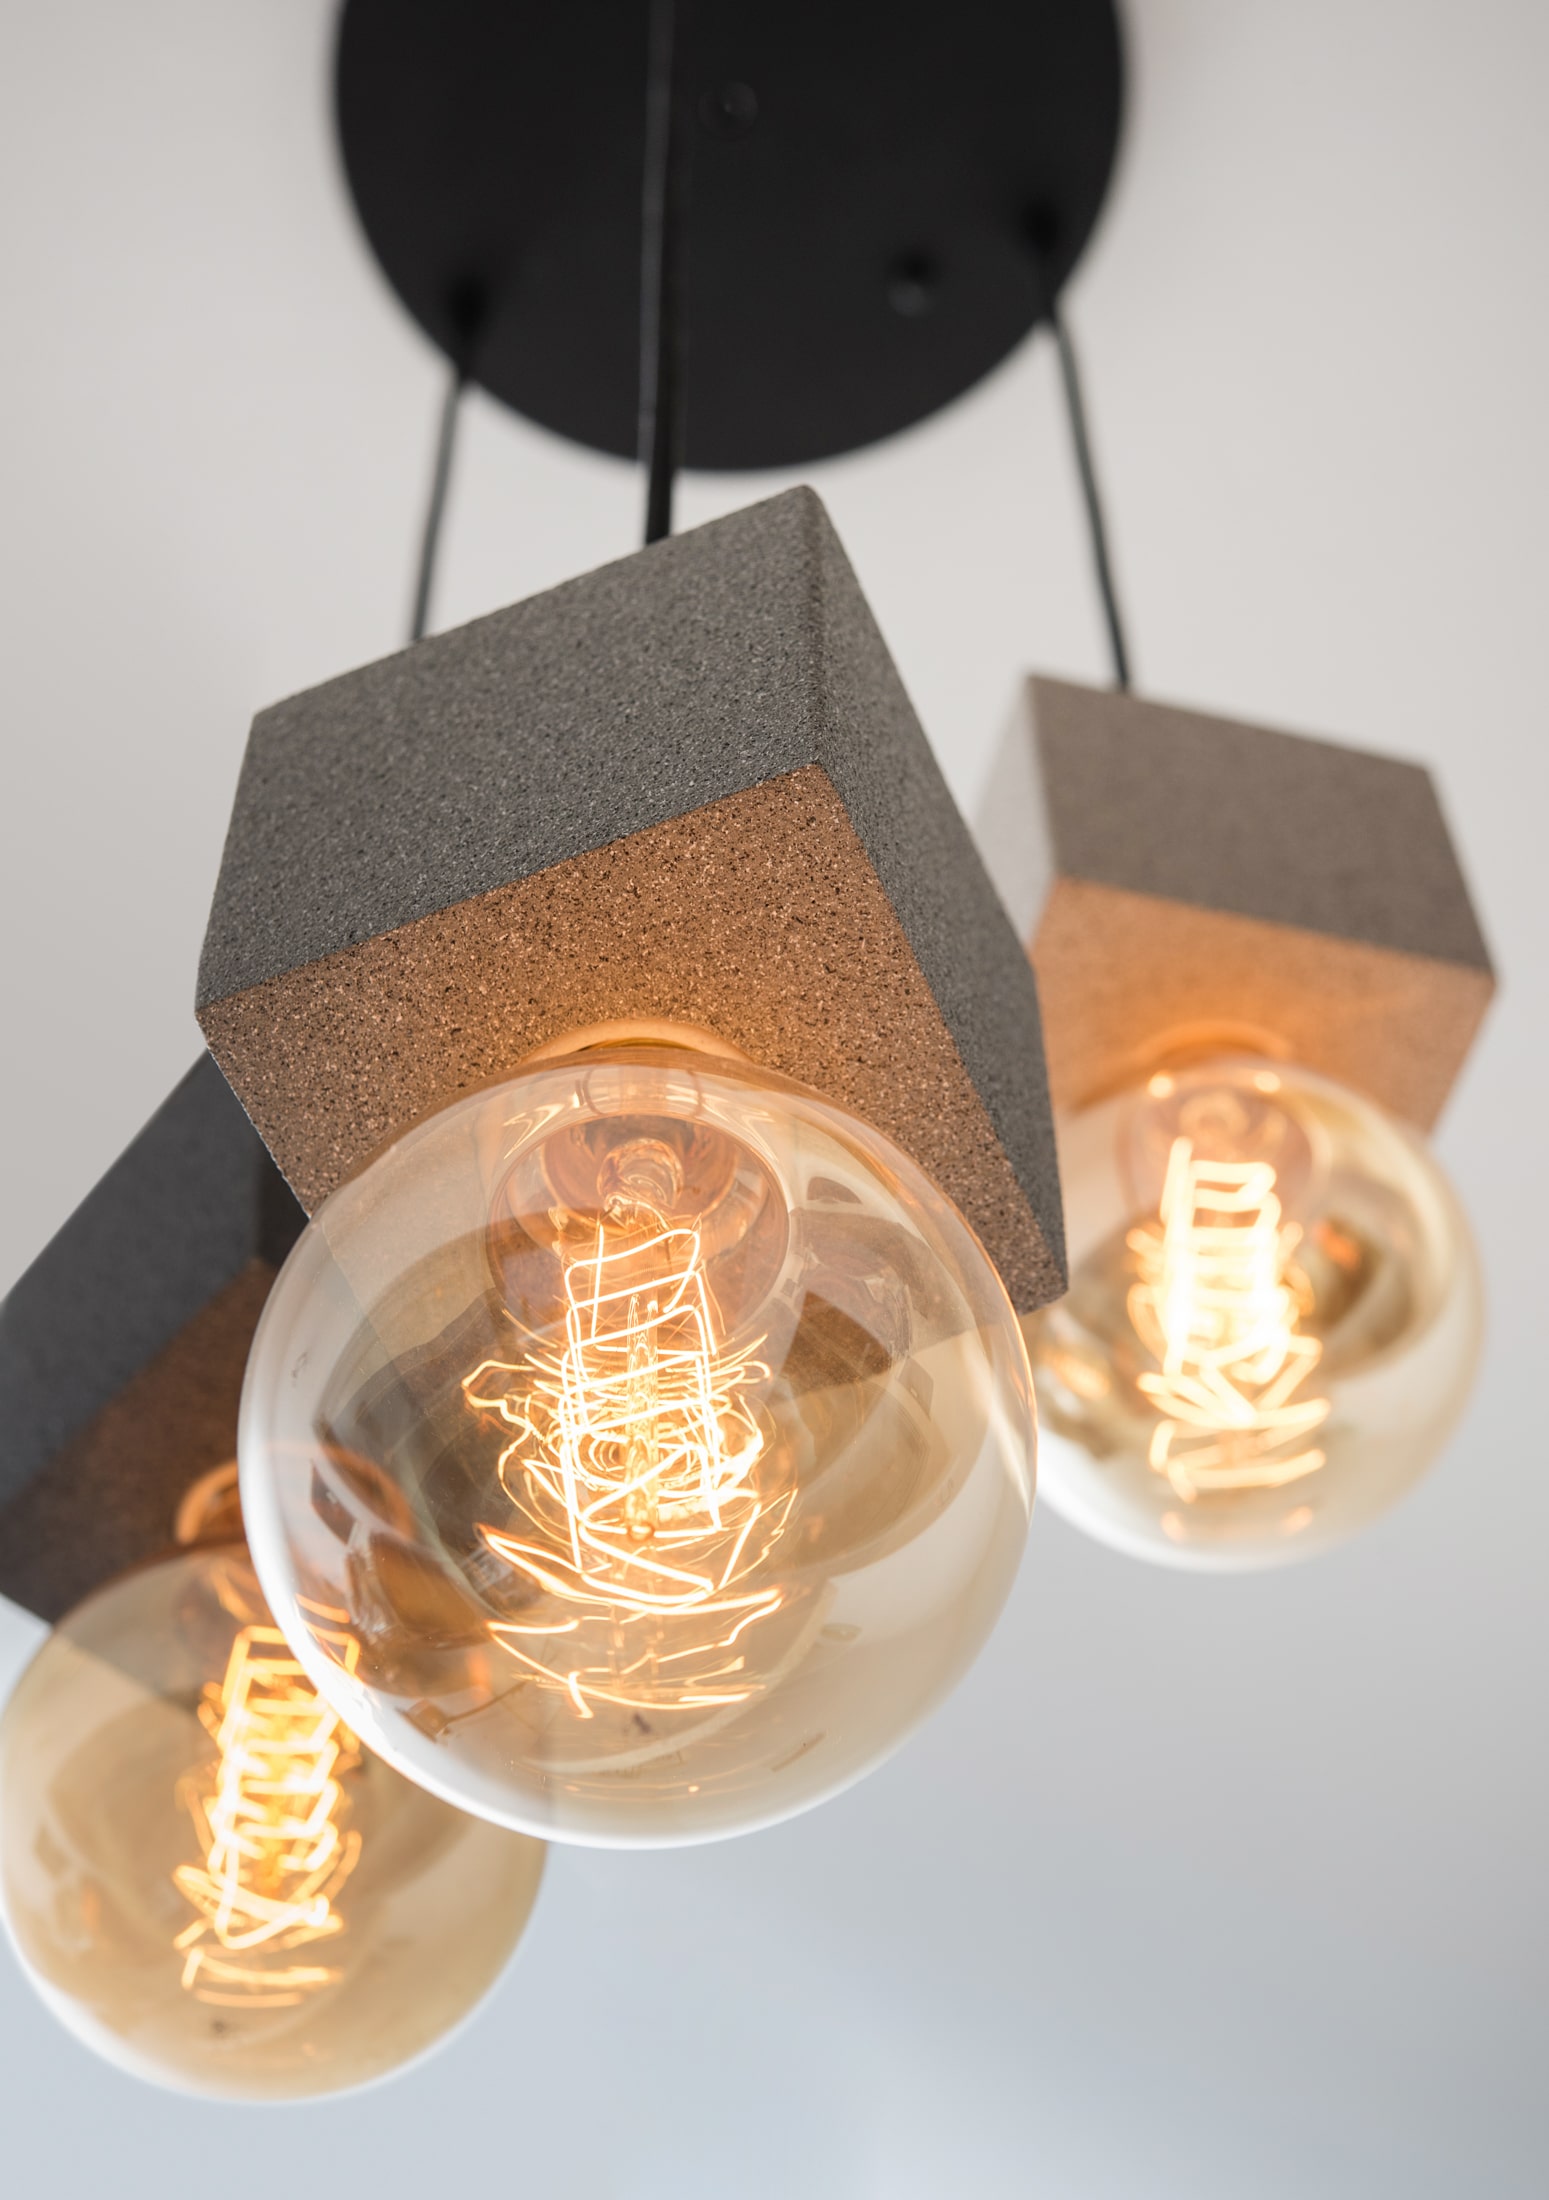 תאורה מעוצב תלוי קוביות אבן פחם | אריאל נתנסון אמן גופי תאורה מעוצבים